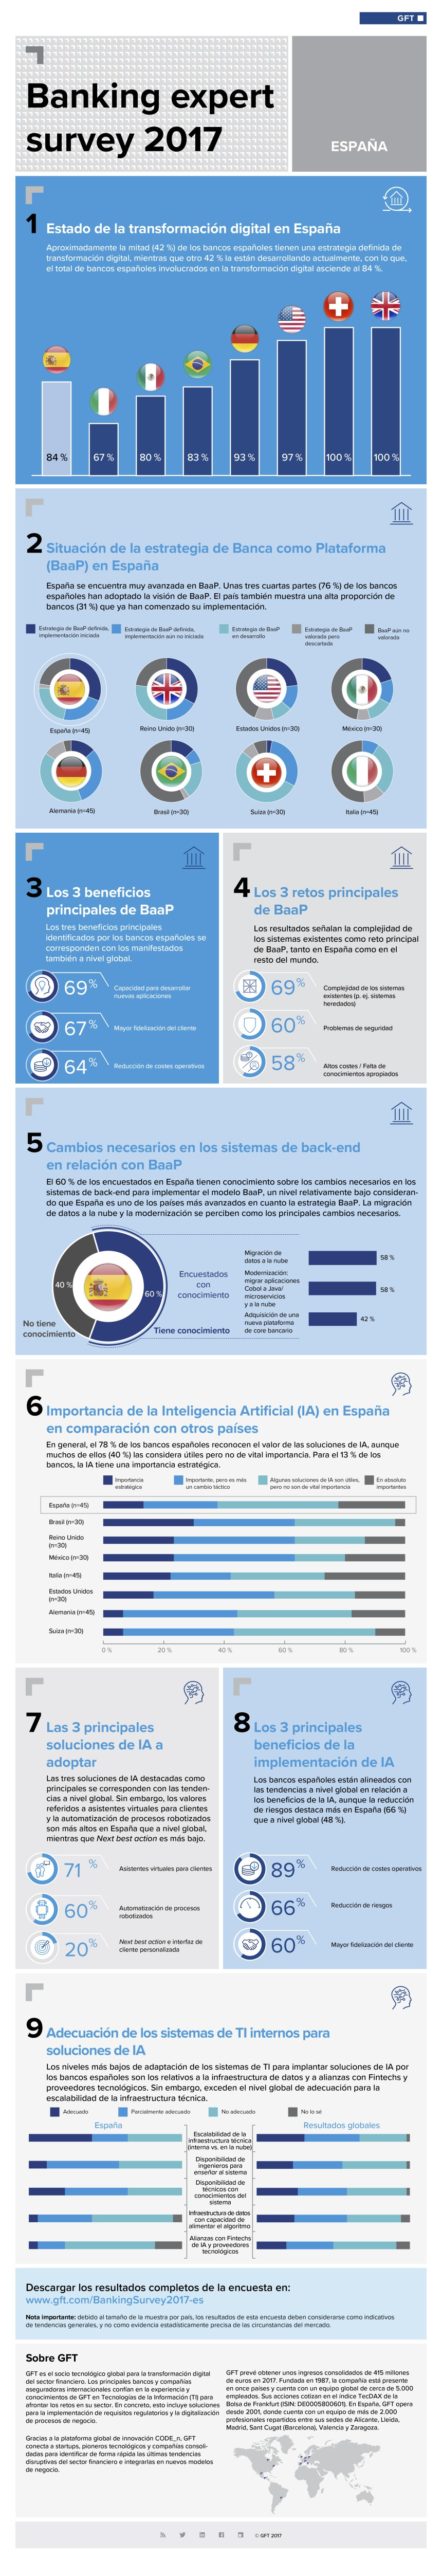 Infografia - Transformación digital de la banca española #infografia #infographic - TICs y Formación